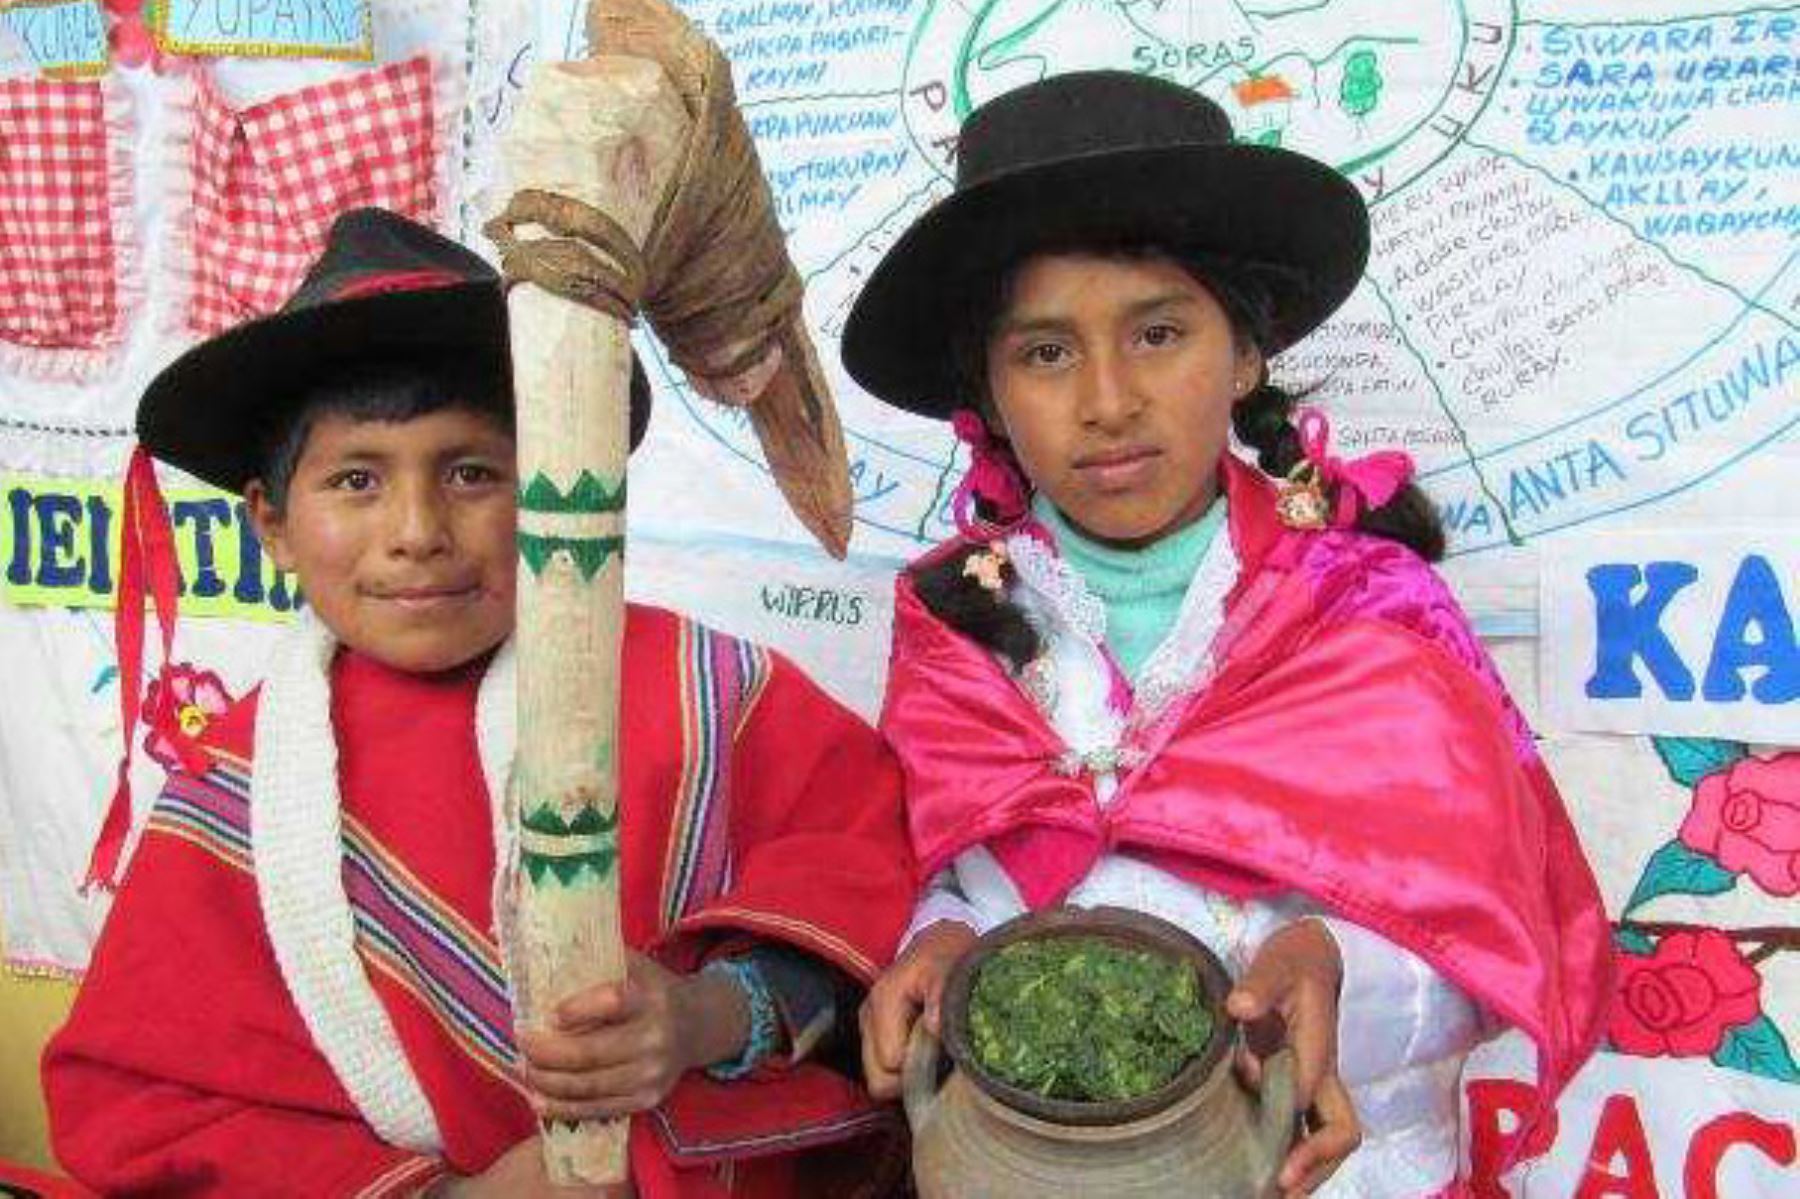 Más de 160 escolares de 21 pueblos originarios y comunidades afroperuanas presentarán en el Tinkuy 2018 alimentos que se cultivan y se emplean en sus localidades, en especial aquellos que contribuyen a un crecimiento saludable, nutritivo y sin anemia.